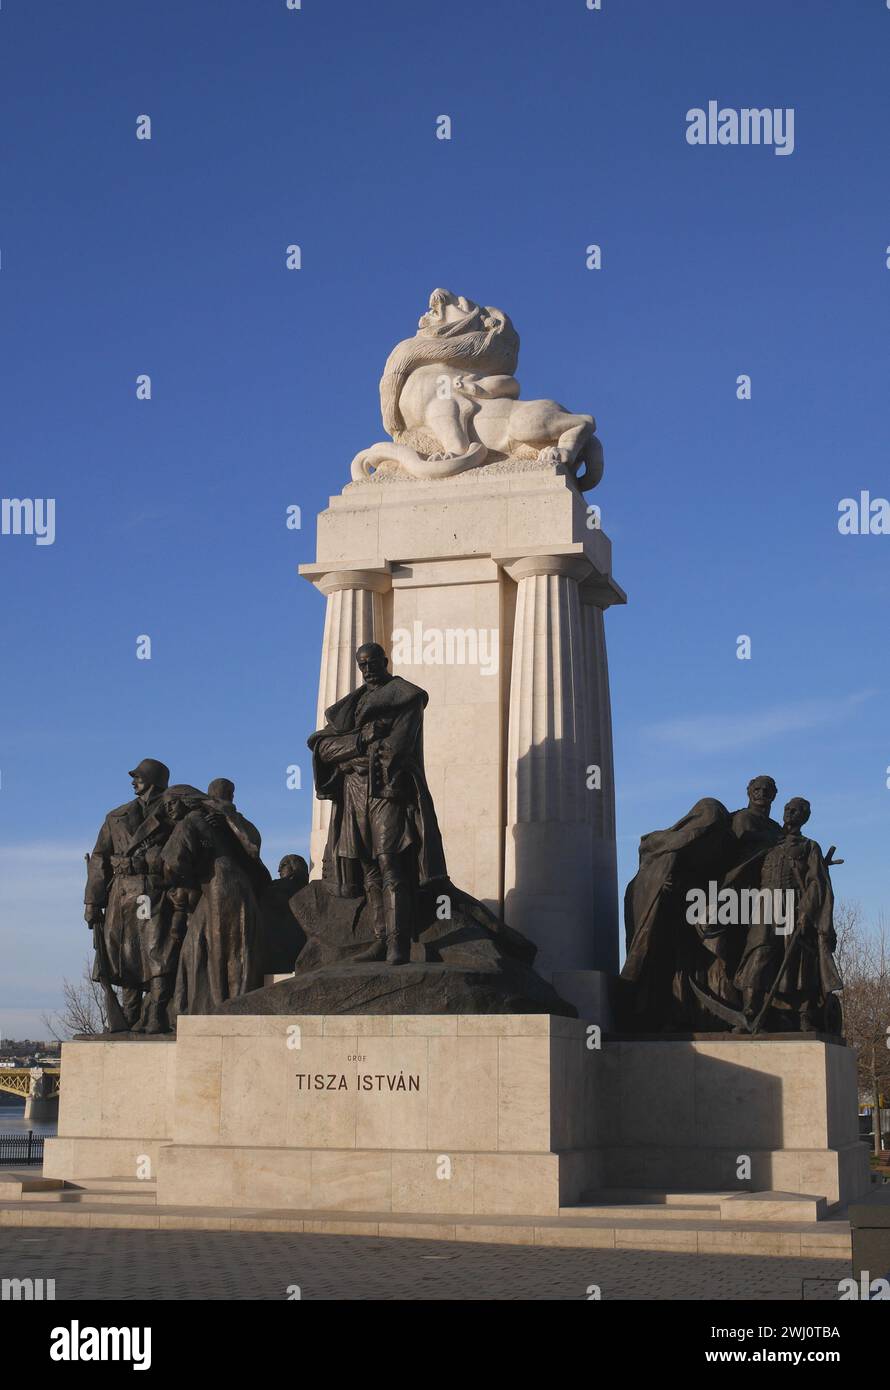 Tisza István monument, Kossuth Lajos ter ( Kossuth Lajos Square), Budapest, Hungary Stock Photo